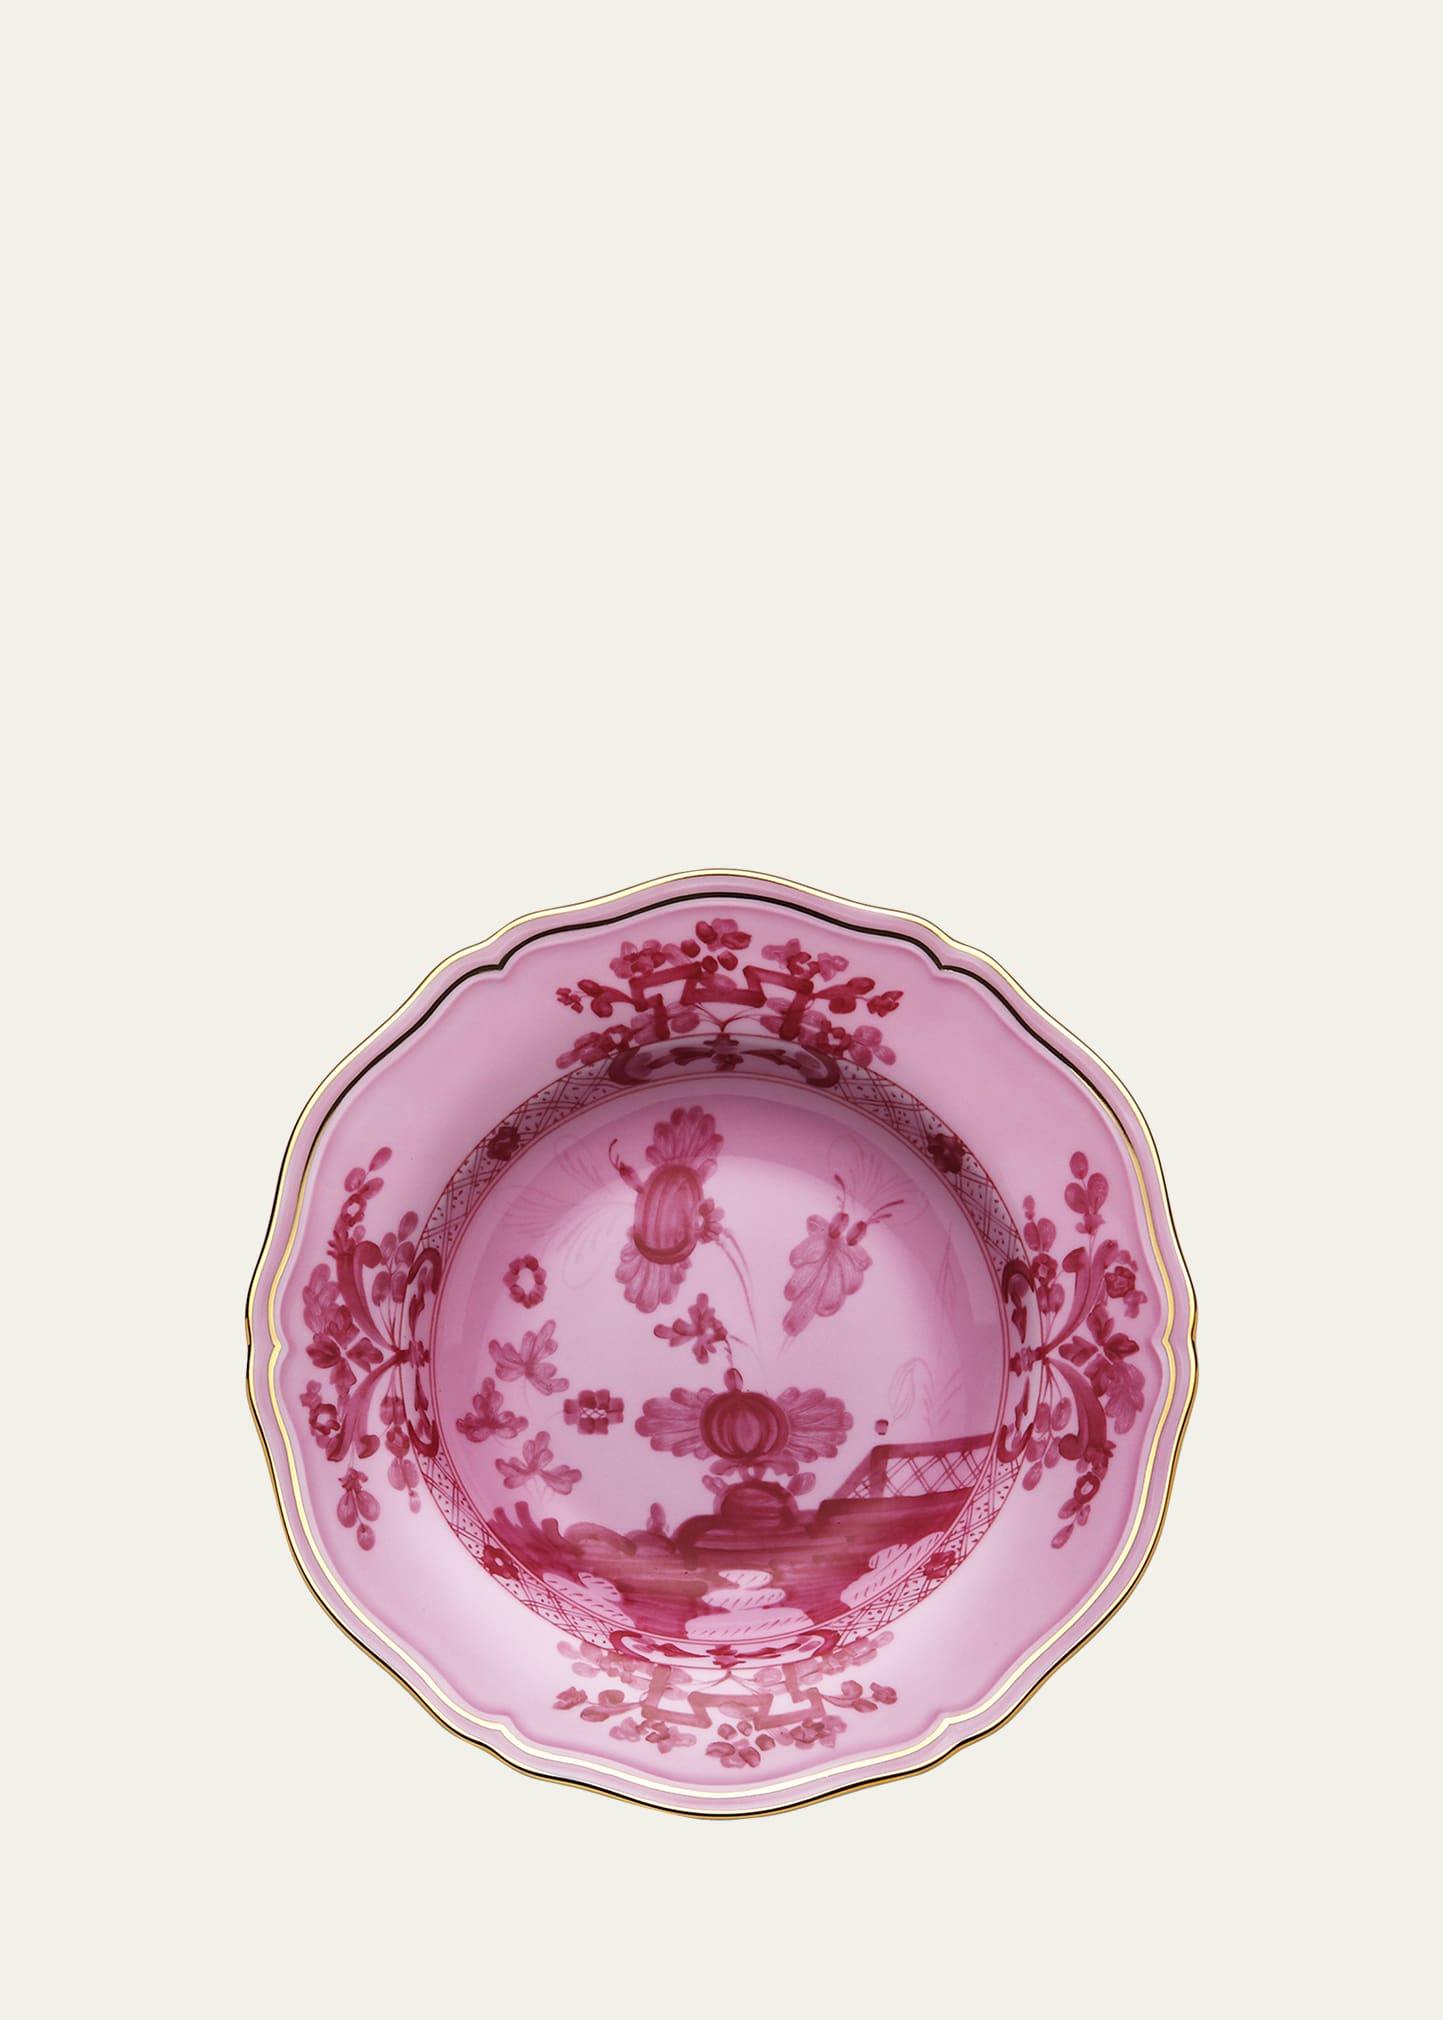 GINORI 1735 Oriente Italiano Soup Plate, Porpora